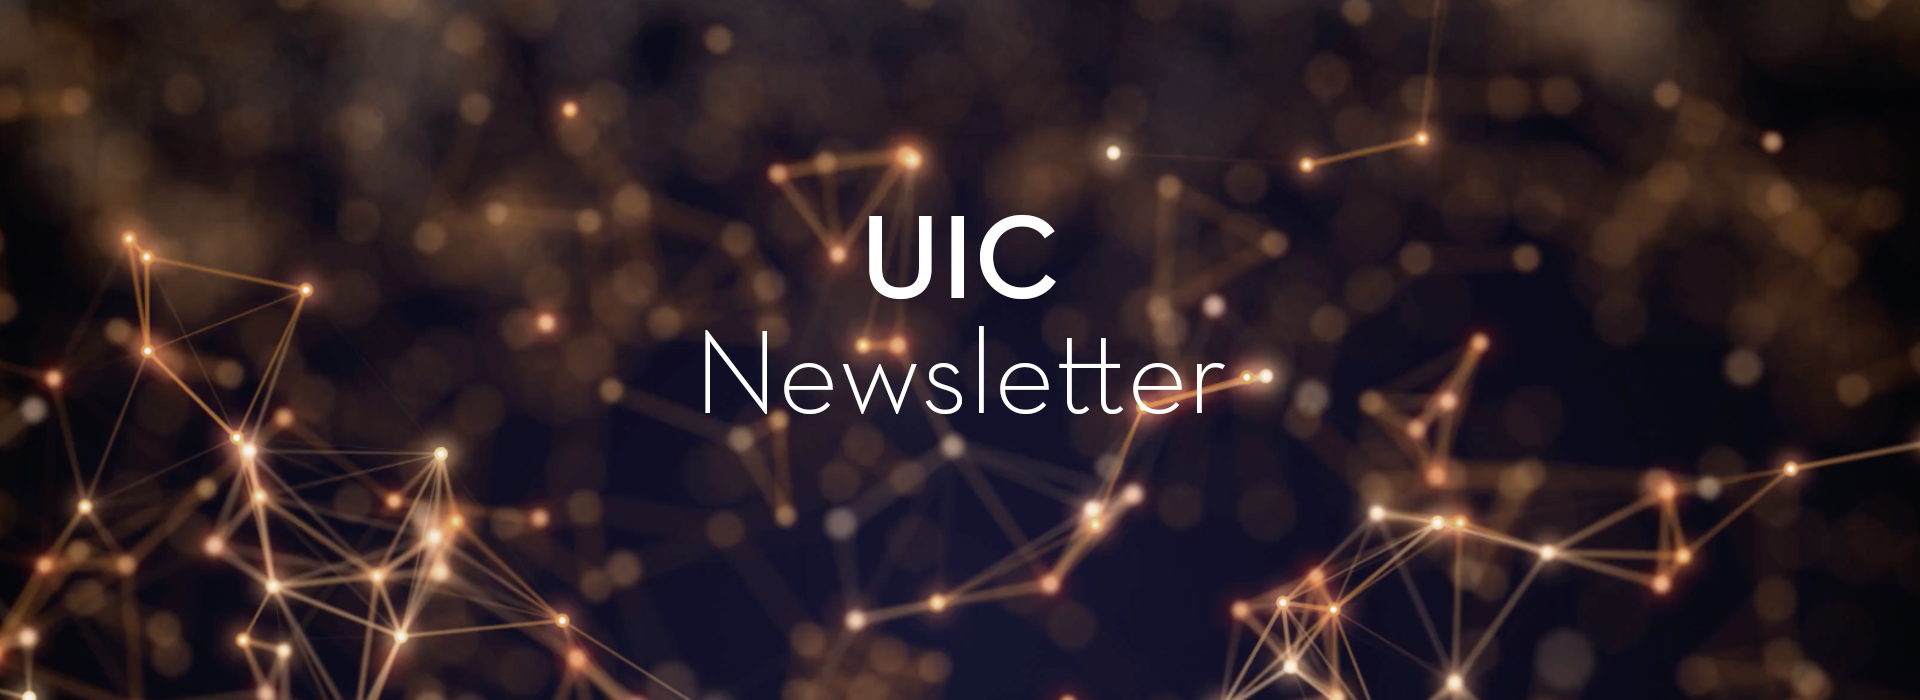 uic_newsletter_header